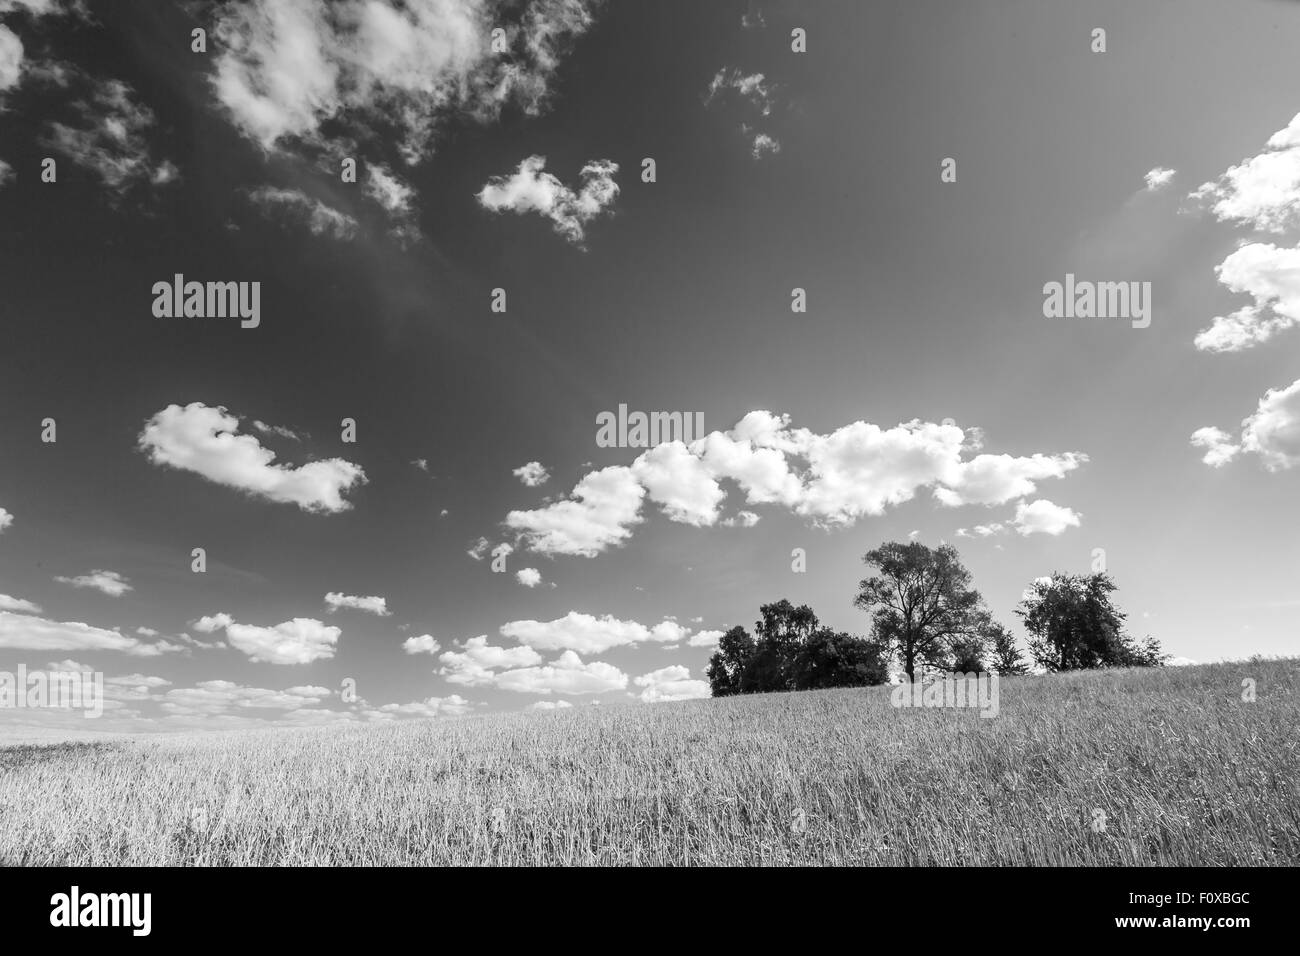 Stoppelfeld unter Himmel mit weißen Wolken. Schwarz / weiß Foto. Sommer-Landschaft. Polnische Landschaft. Stockfoto